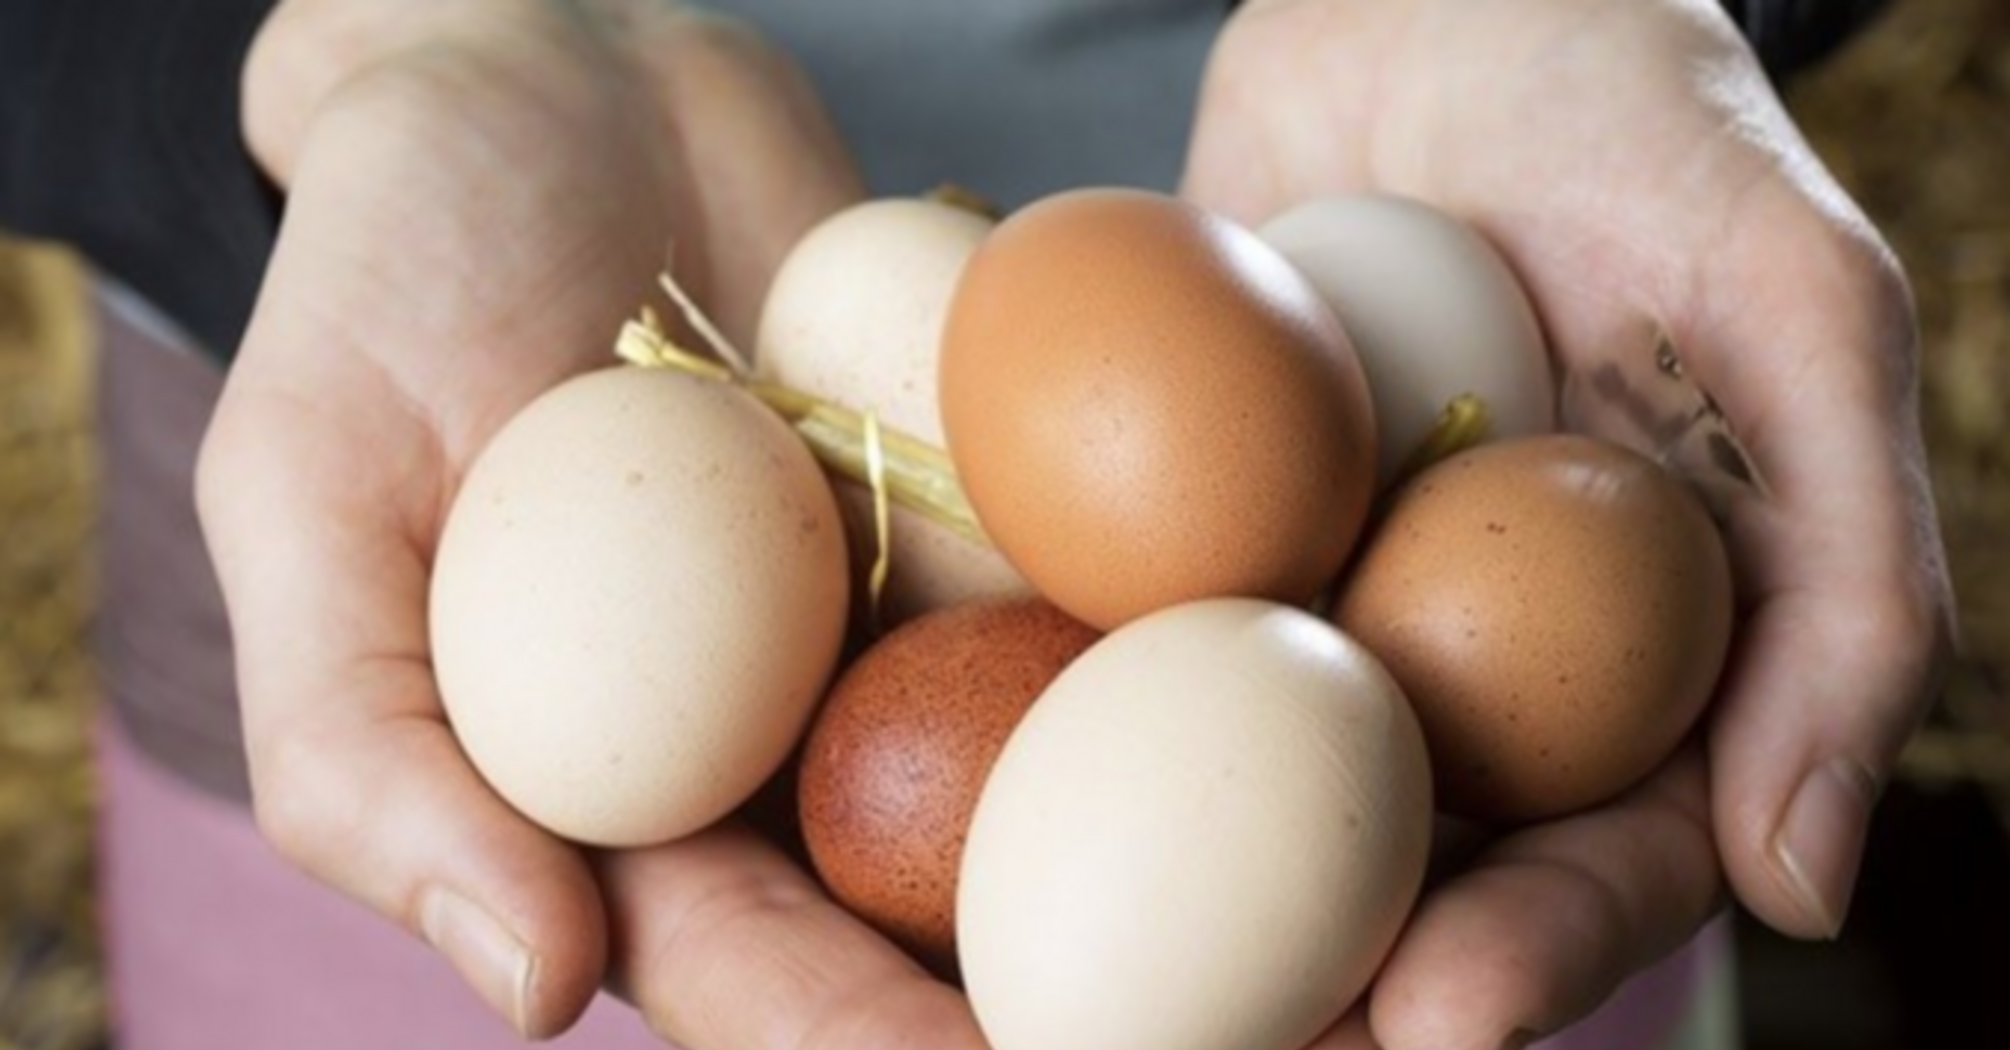 Віддаєте щастя з дому: чому, за повір'ями, не можна позичати курячі яйця